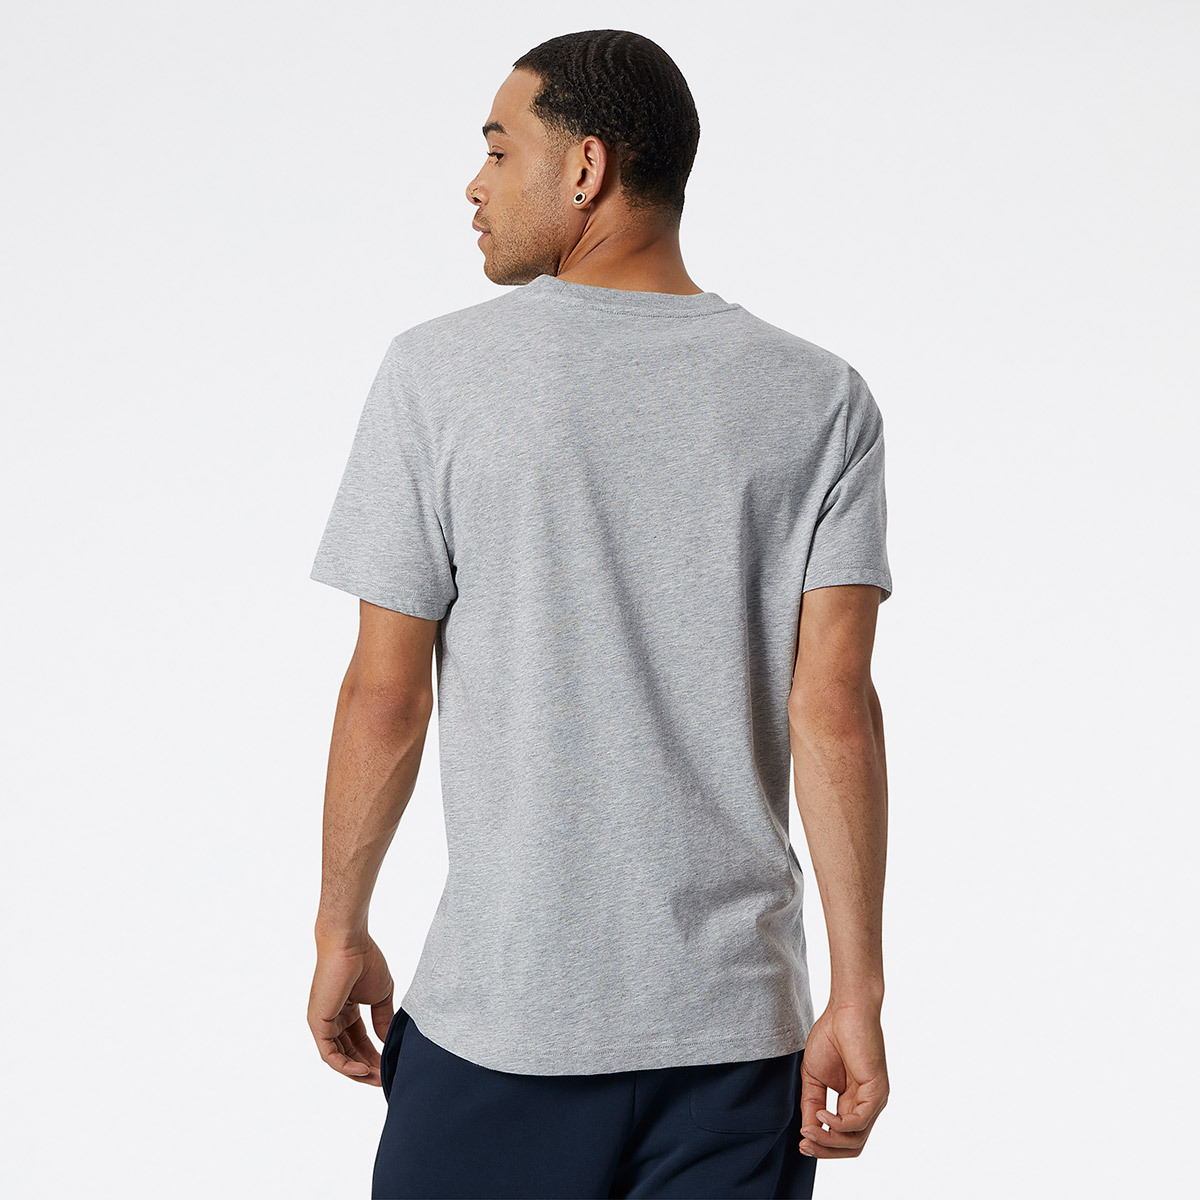 뉴발란스 남성 반소매 티셔츠 - 그레이, XL